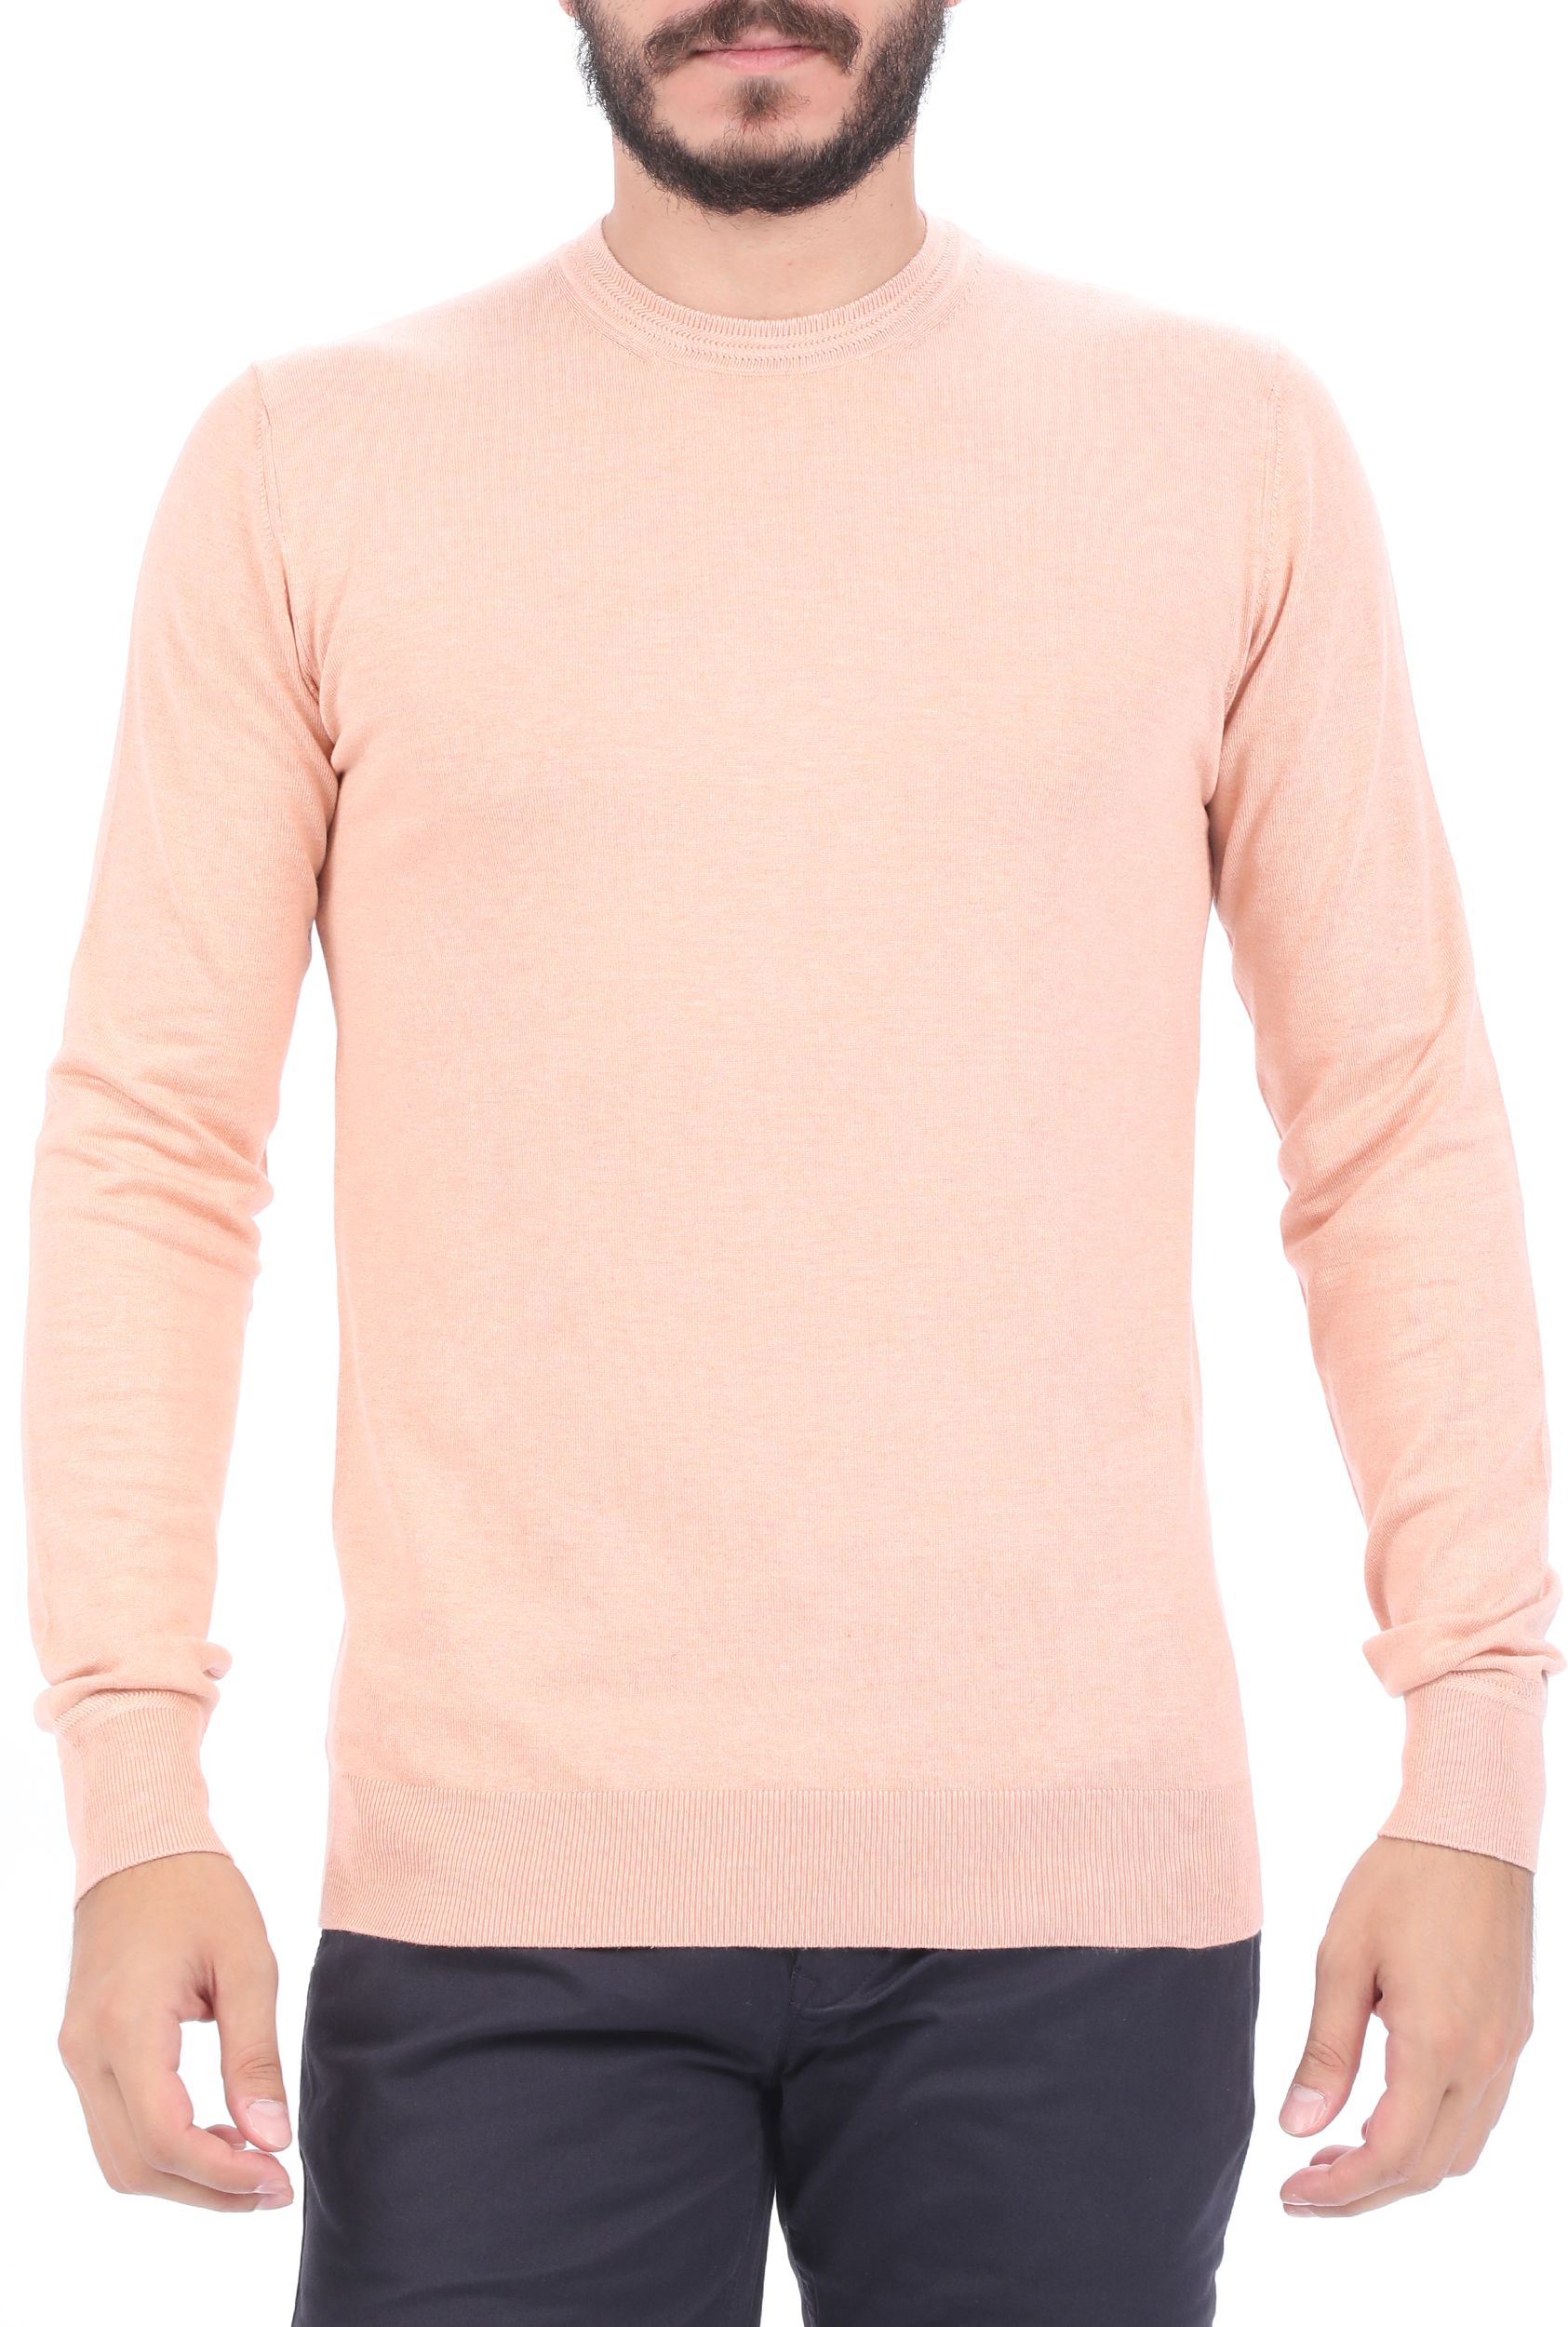 Ανδρικά/Ρούχα/Πλεκτά-Ζακέτες/Μπλούζες SCOTCH & SODA - Ανδρική πλεκτή μπλούζα SCOTCH & SODA Classic melange Ecovero blend ροζ